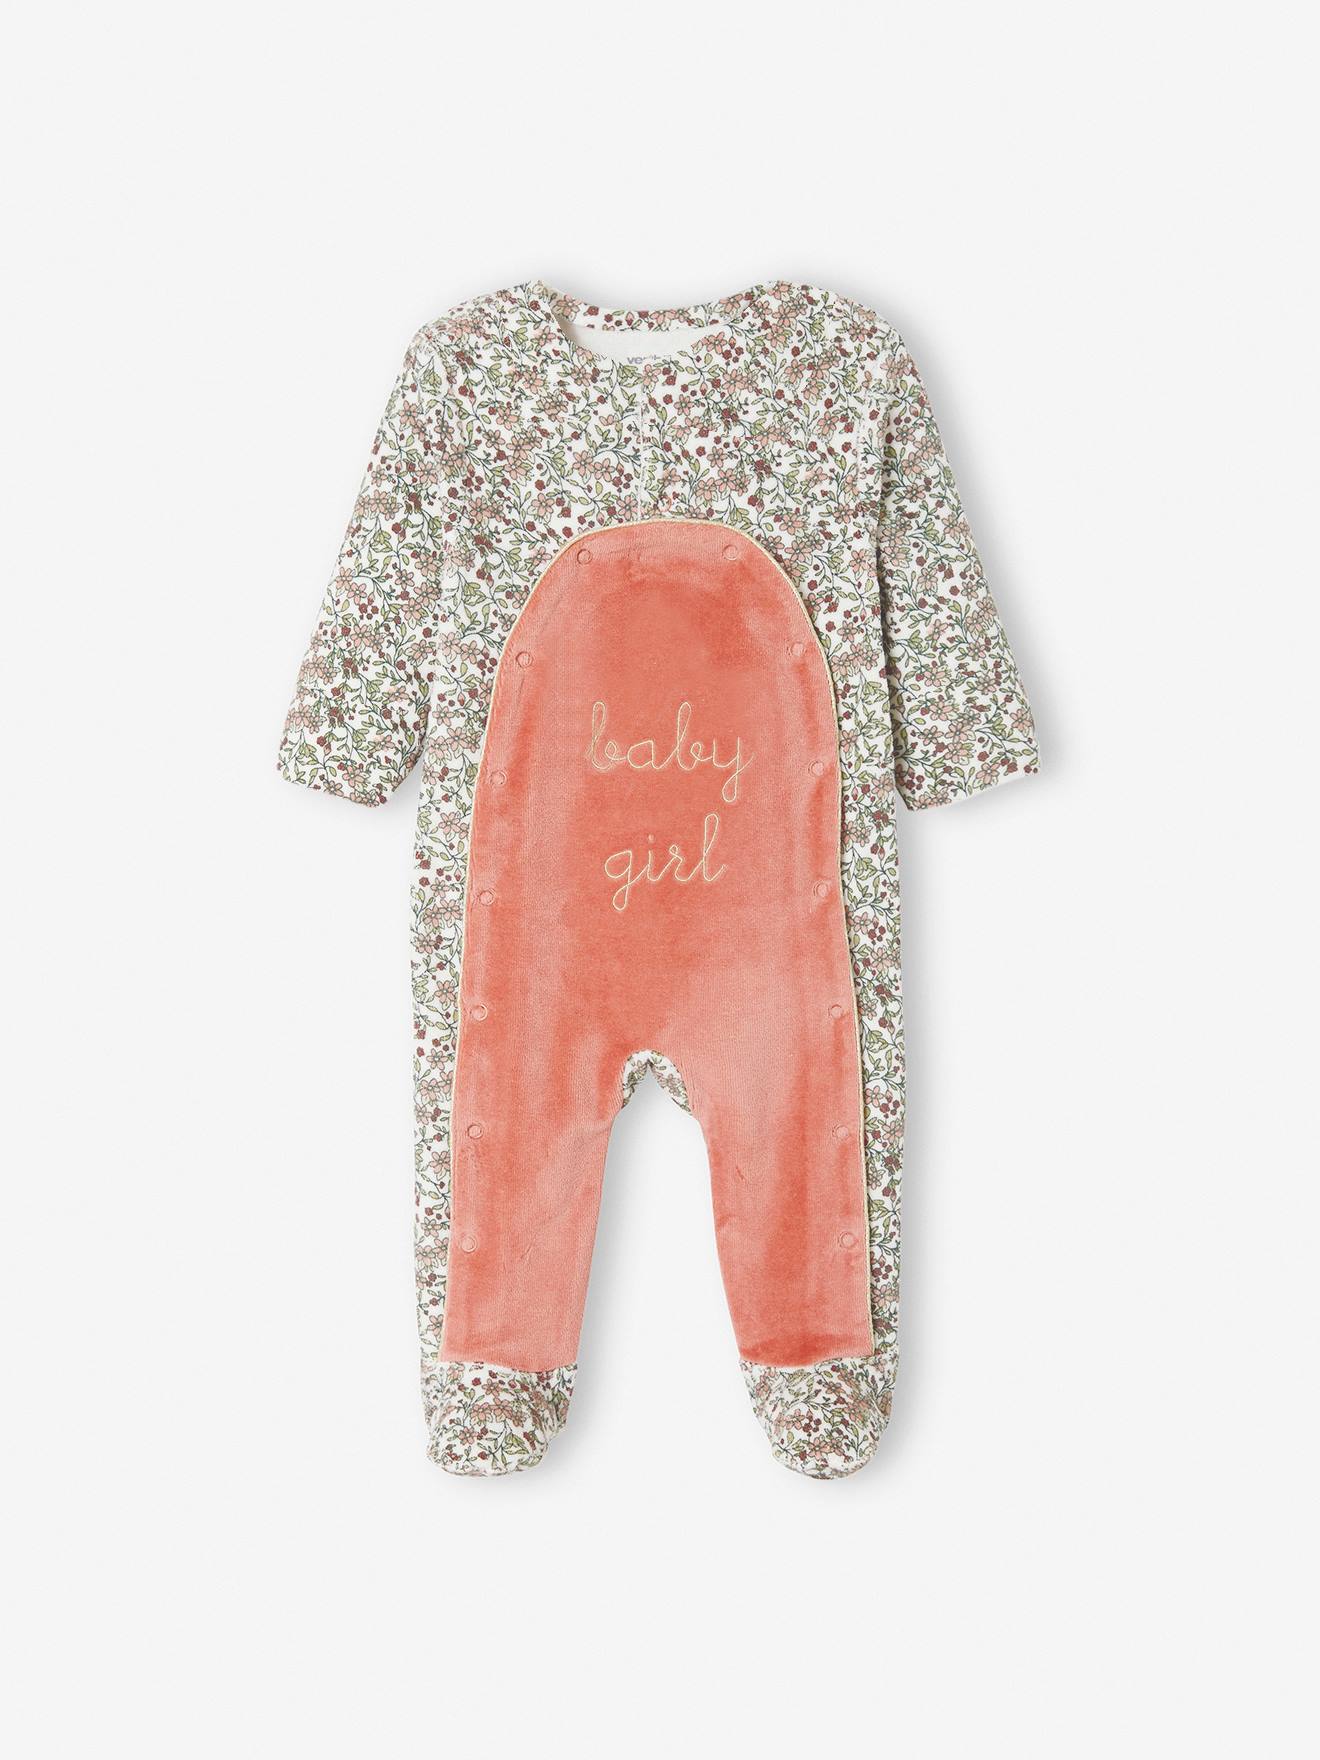 Pyjama bébé molleton Glisse 6 mois Taille 68 cm